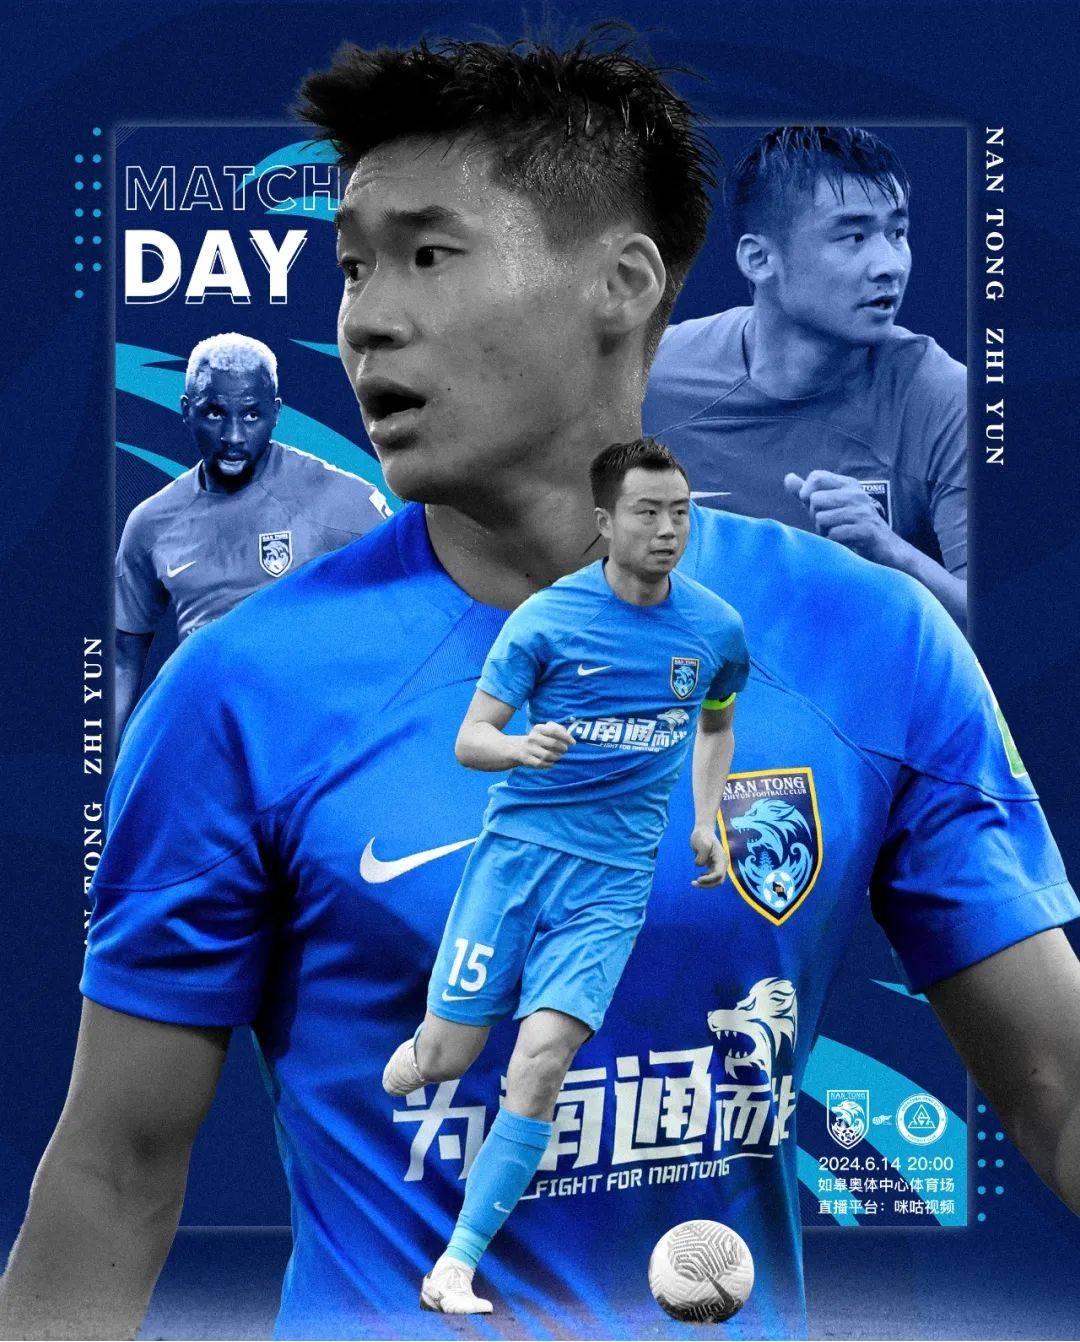 Nantong Zhiyun vs. Shenzhen Xinpengcheng Starting XI: Single Foreign Player vs. Three Foreign Players, Baihelamu on the Bench